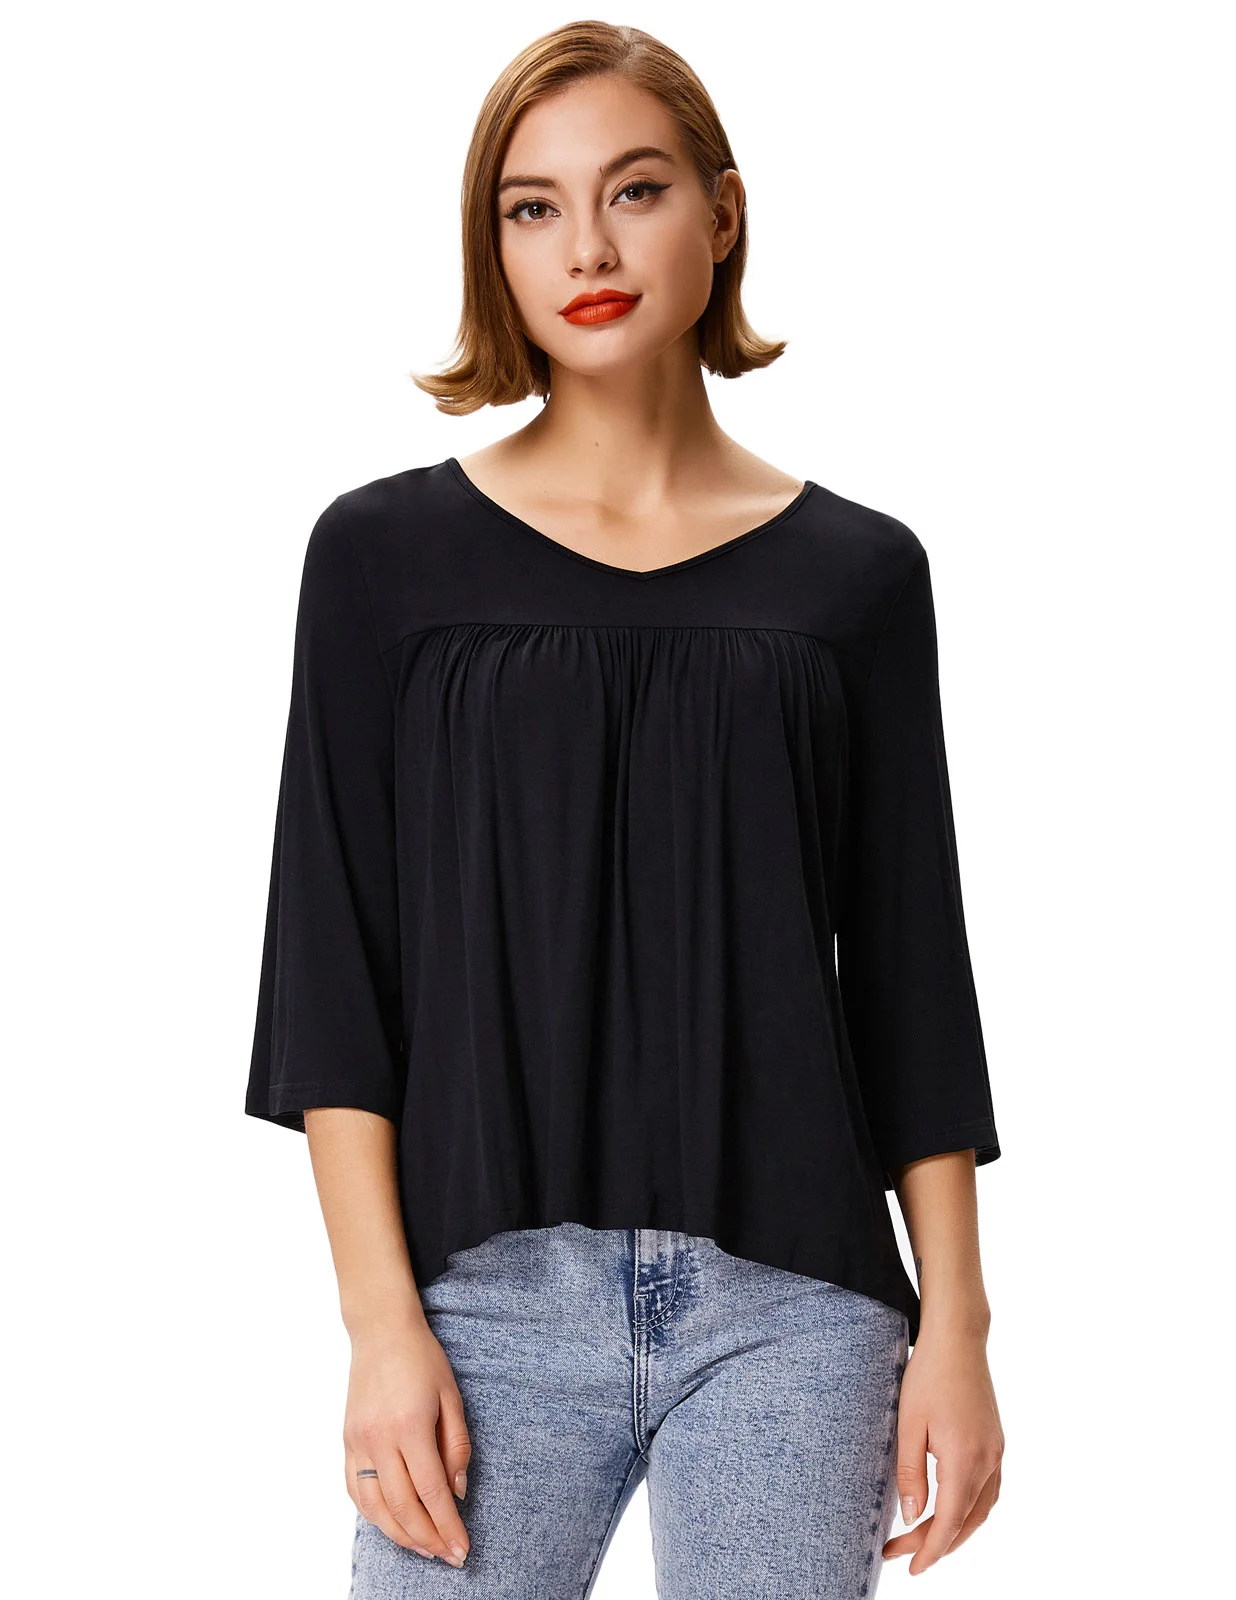 GK осень женская блузка Повседневная Свободная мягкая удобная три четверти расклешенные рукава v-образный вырез рубашка с высоким низким